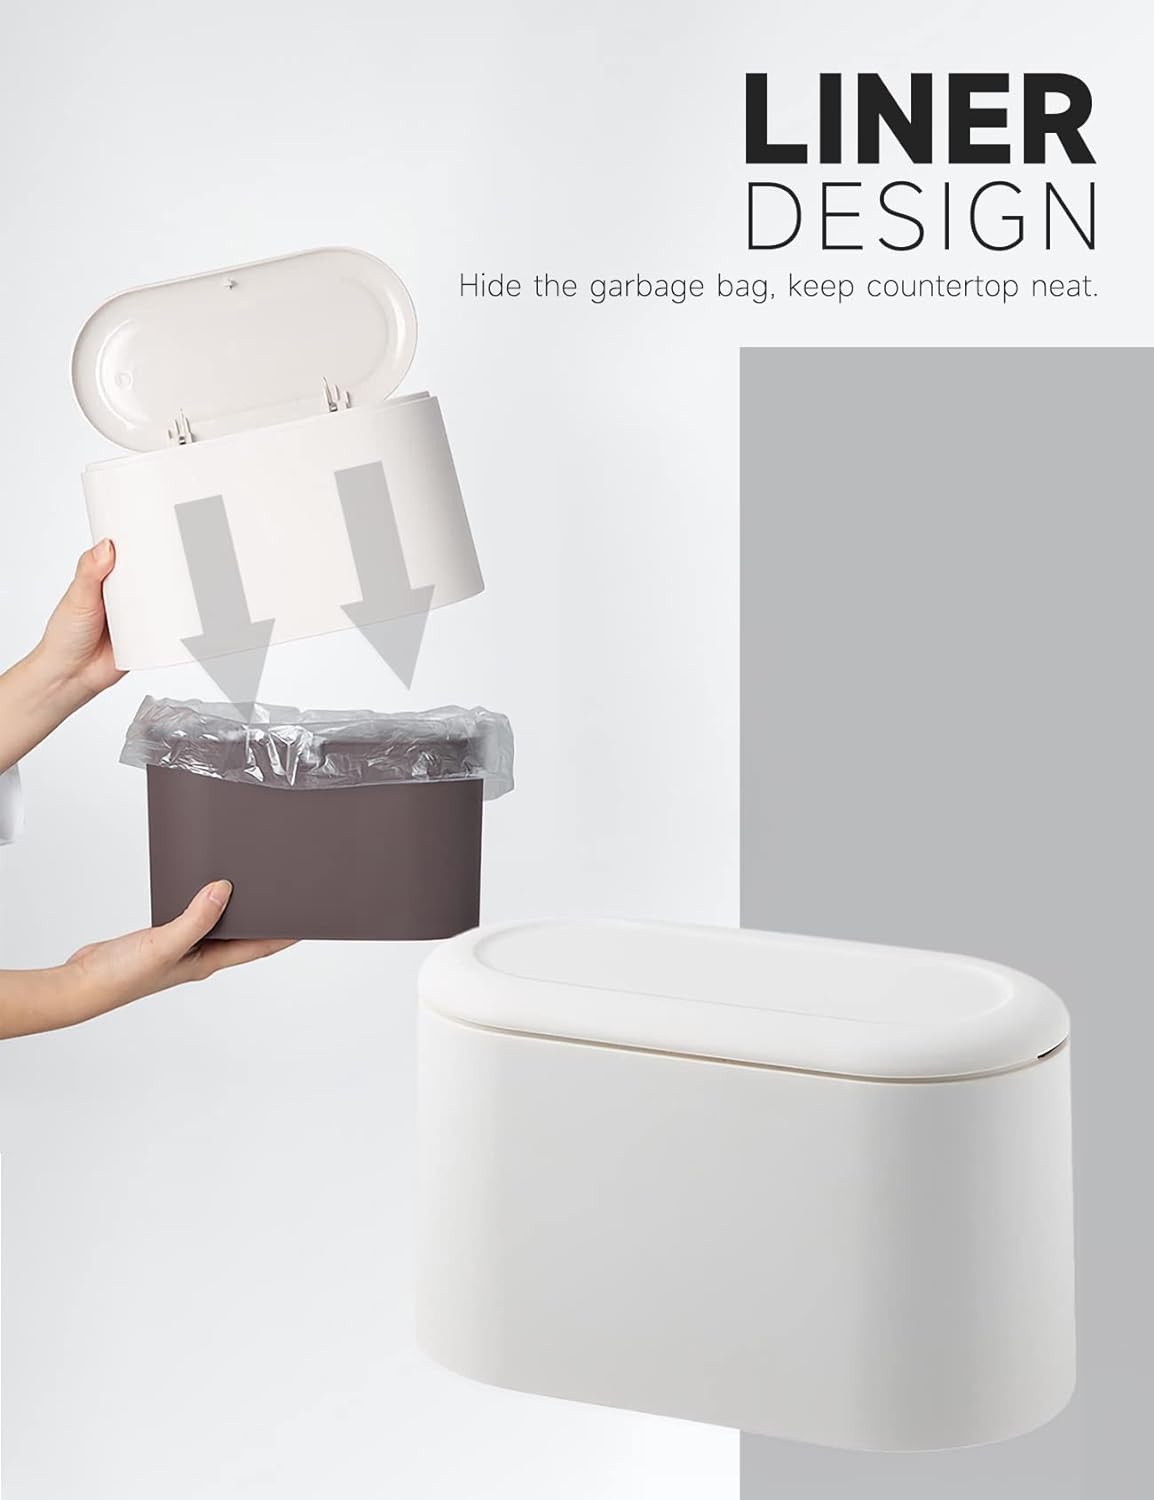 MONGTINGLU Mini Trash Can with Lid design